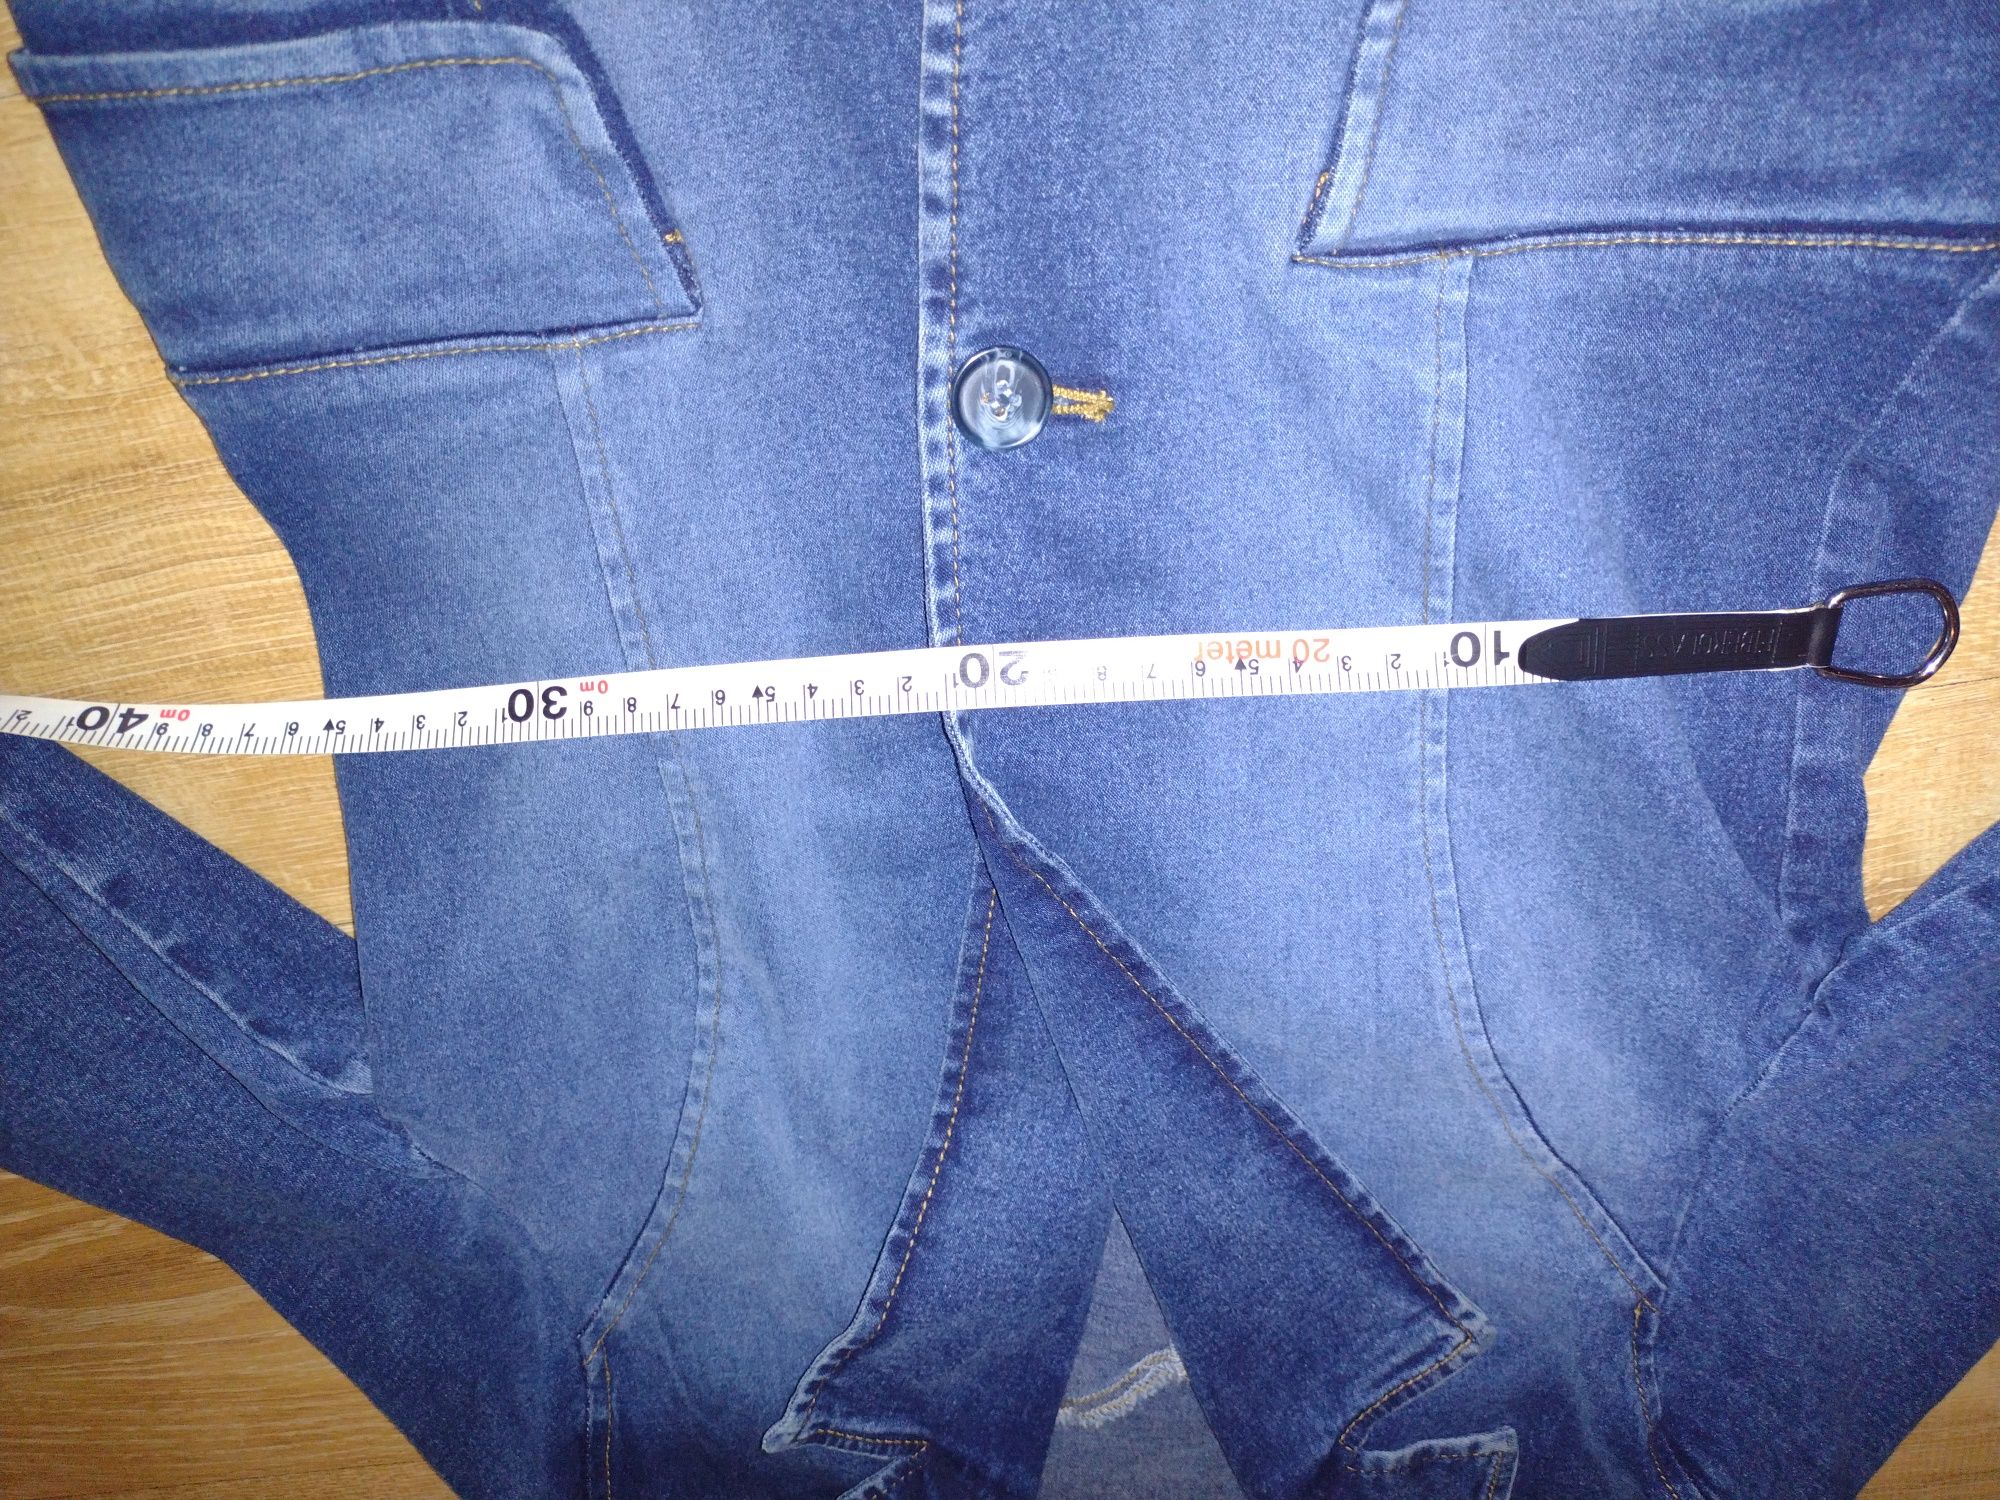 Żakiet jeansowy Jakes rozmiar 36